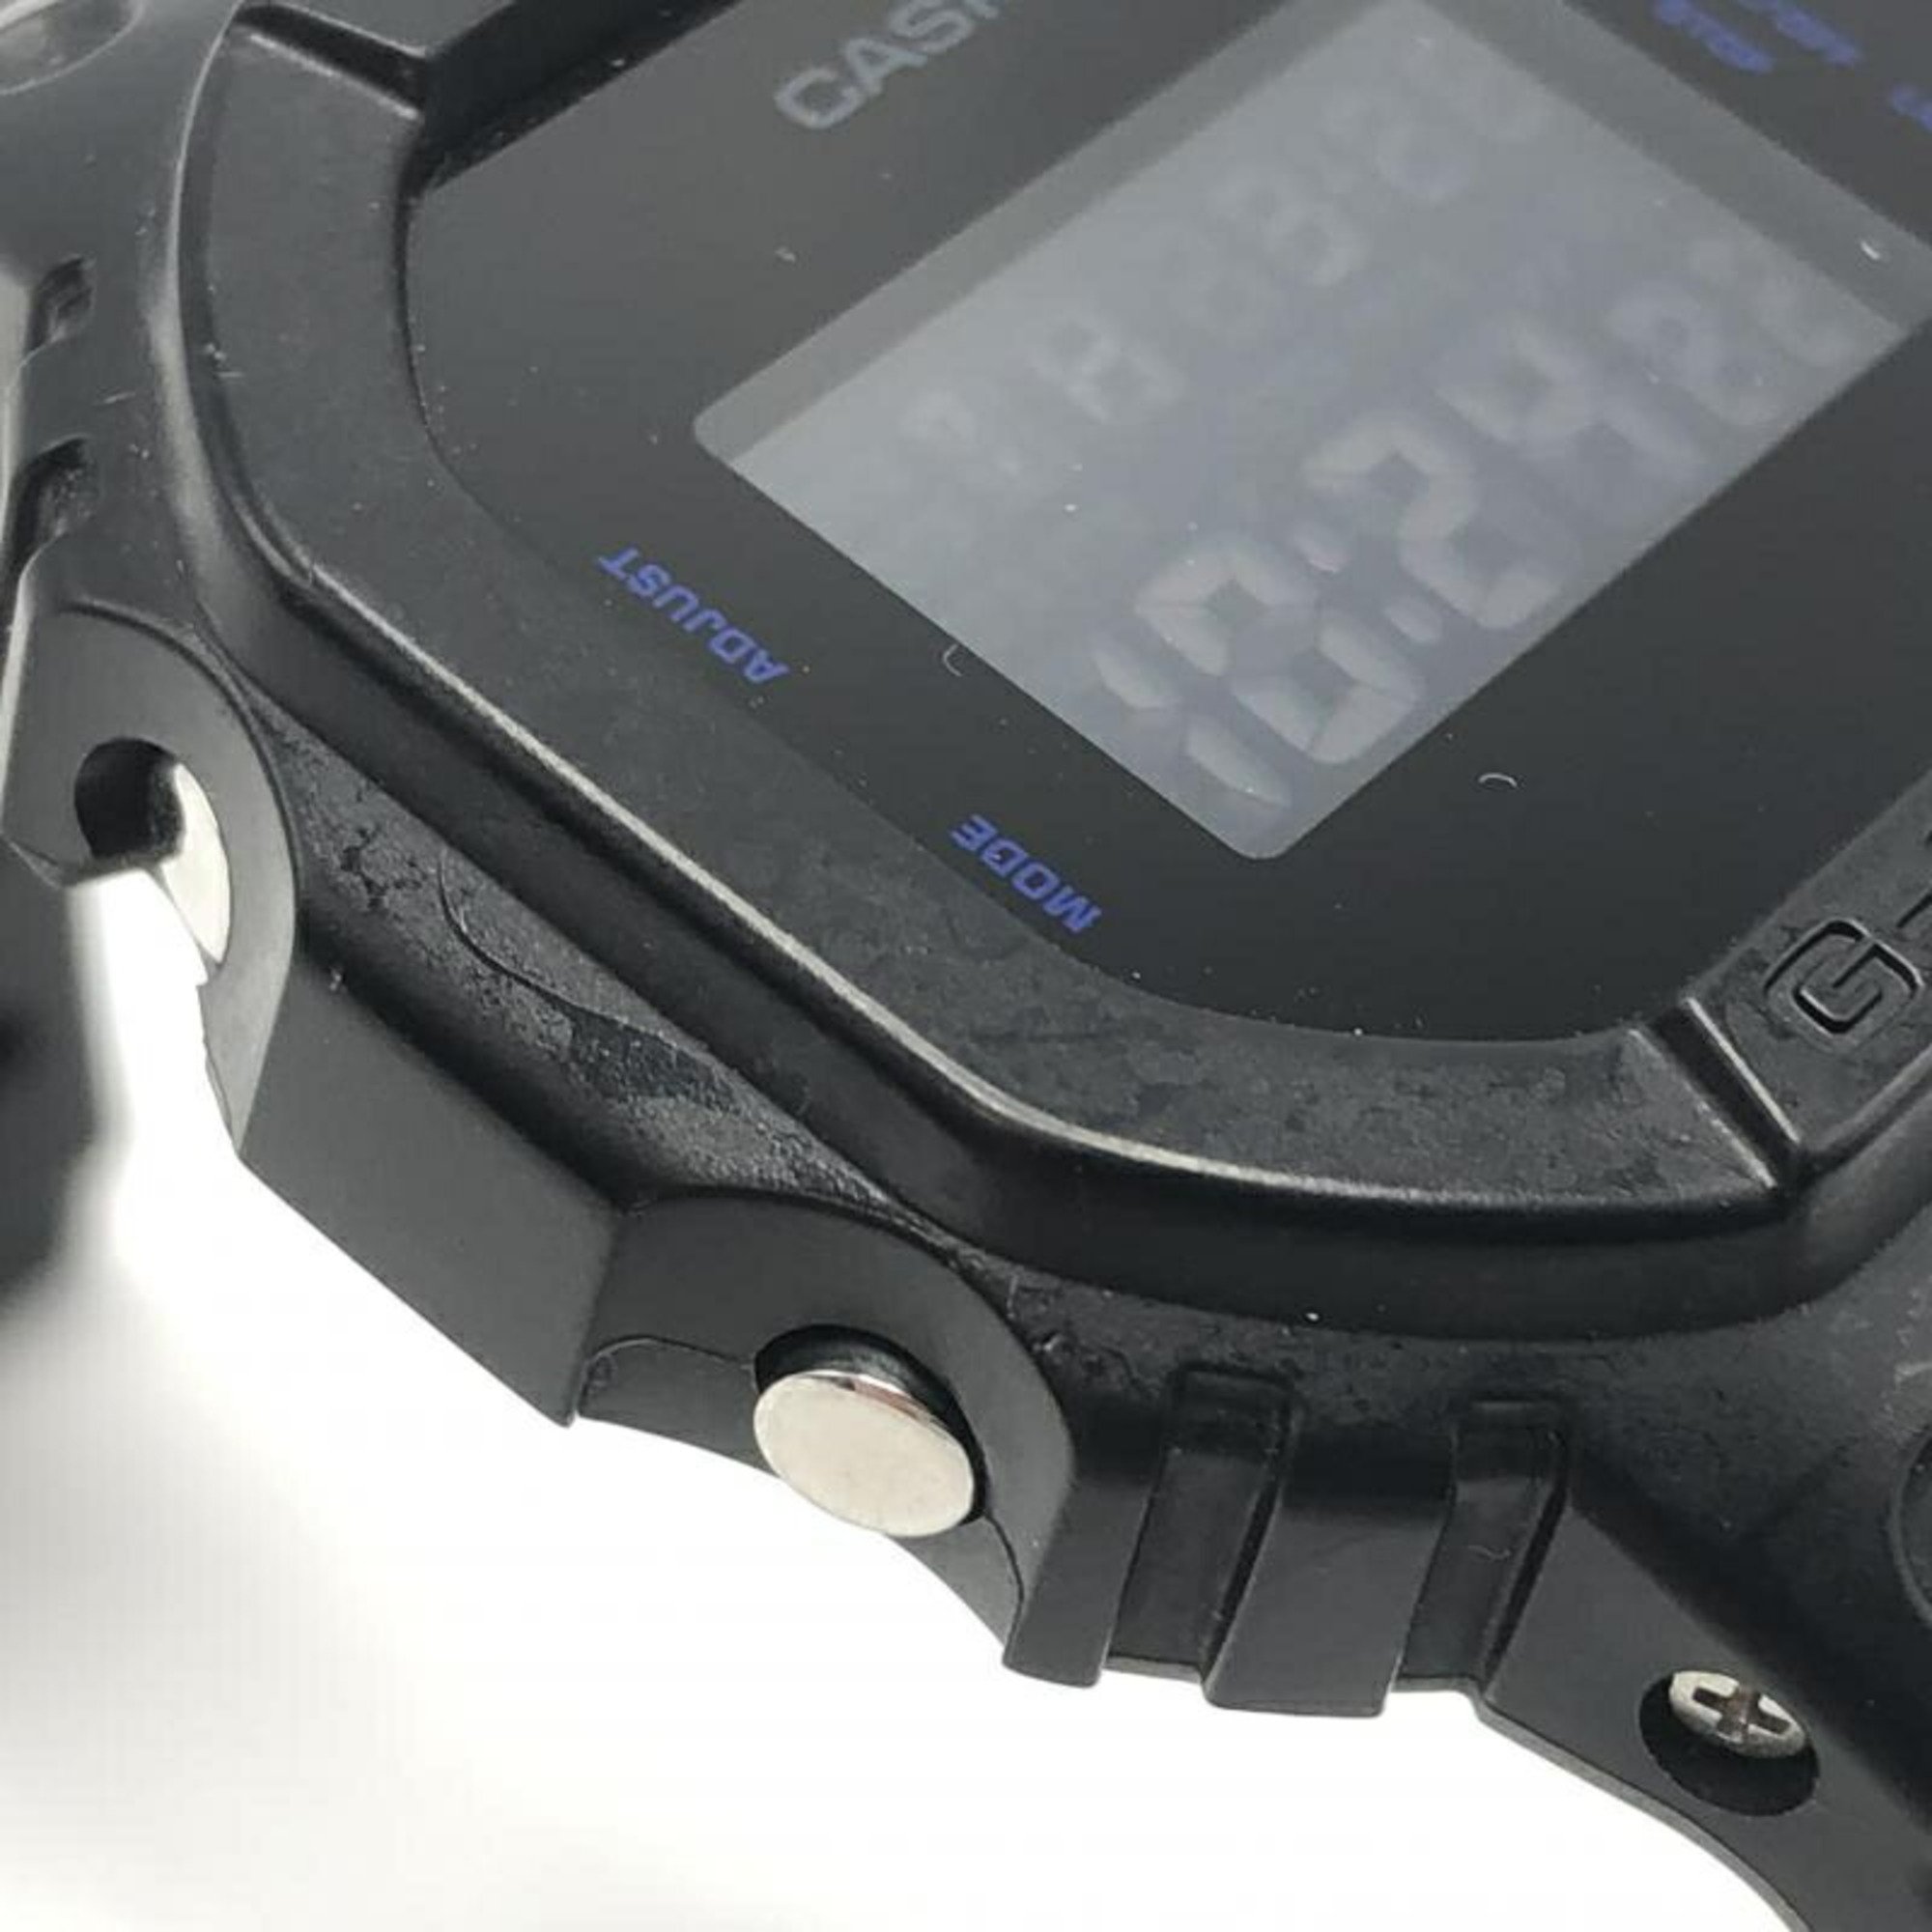 CASIO G-SHOCK DW-5600VT watch black Casio